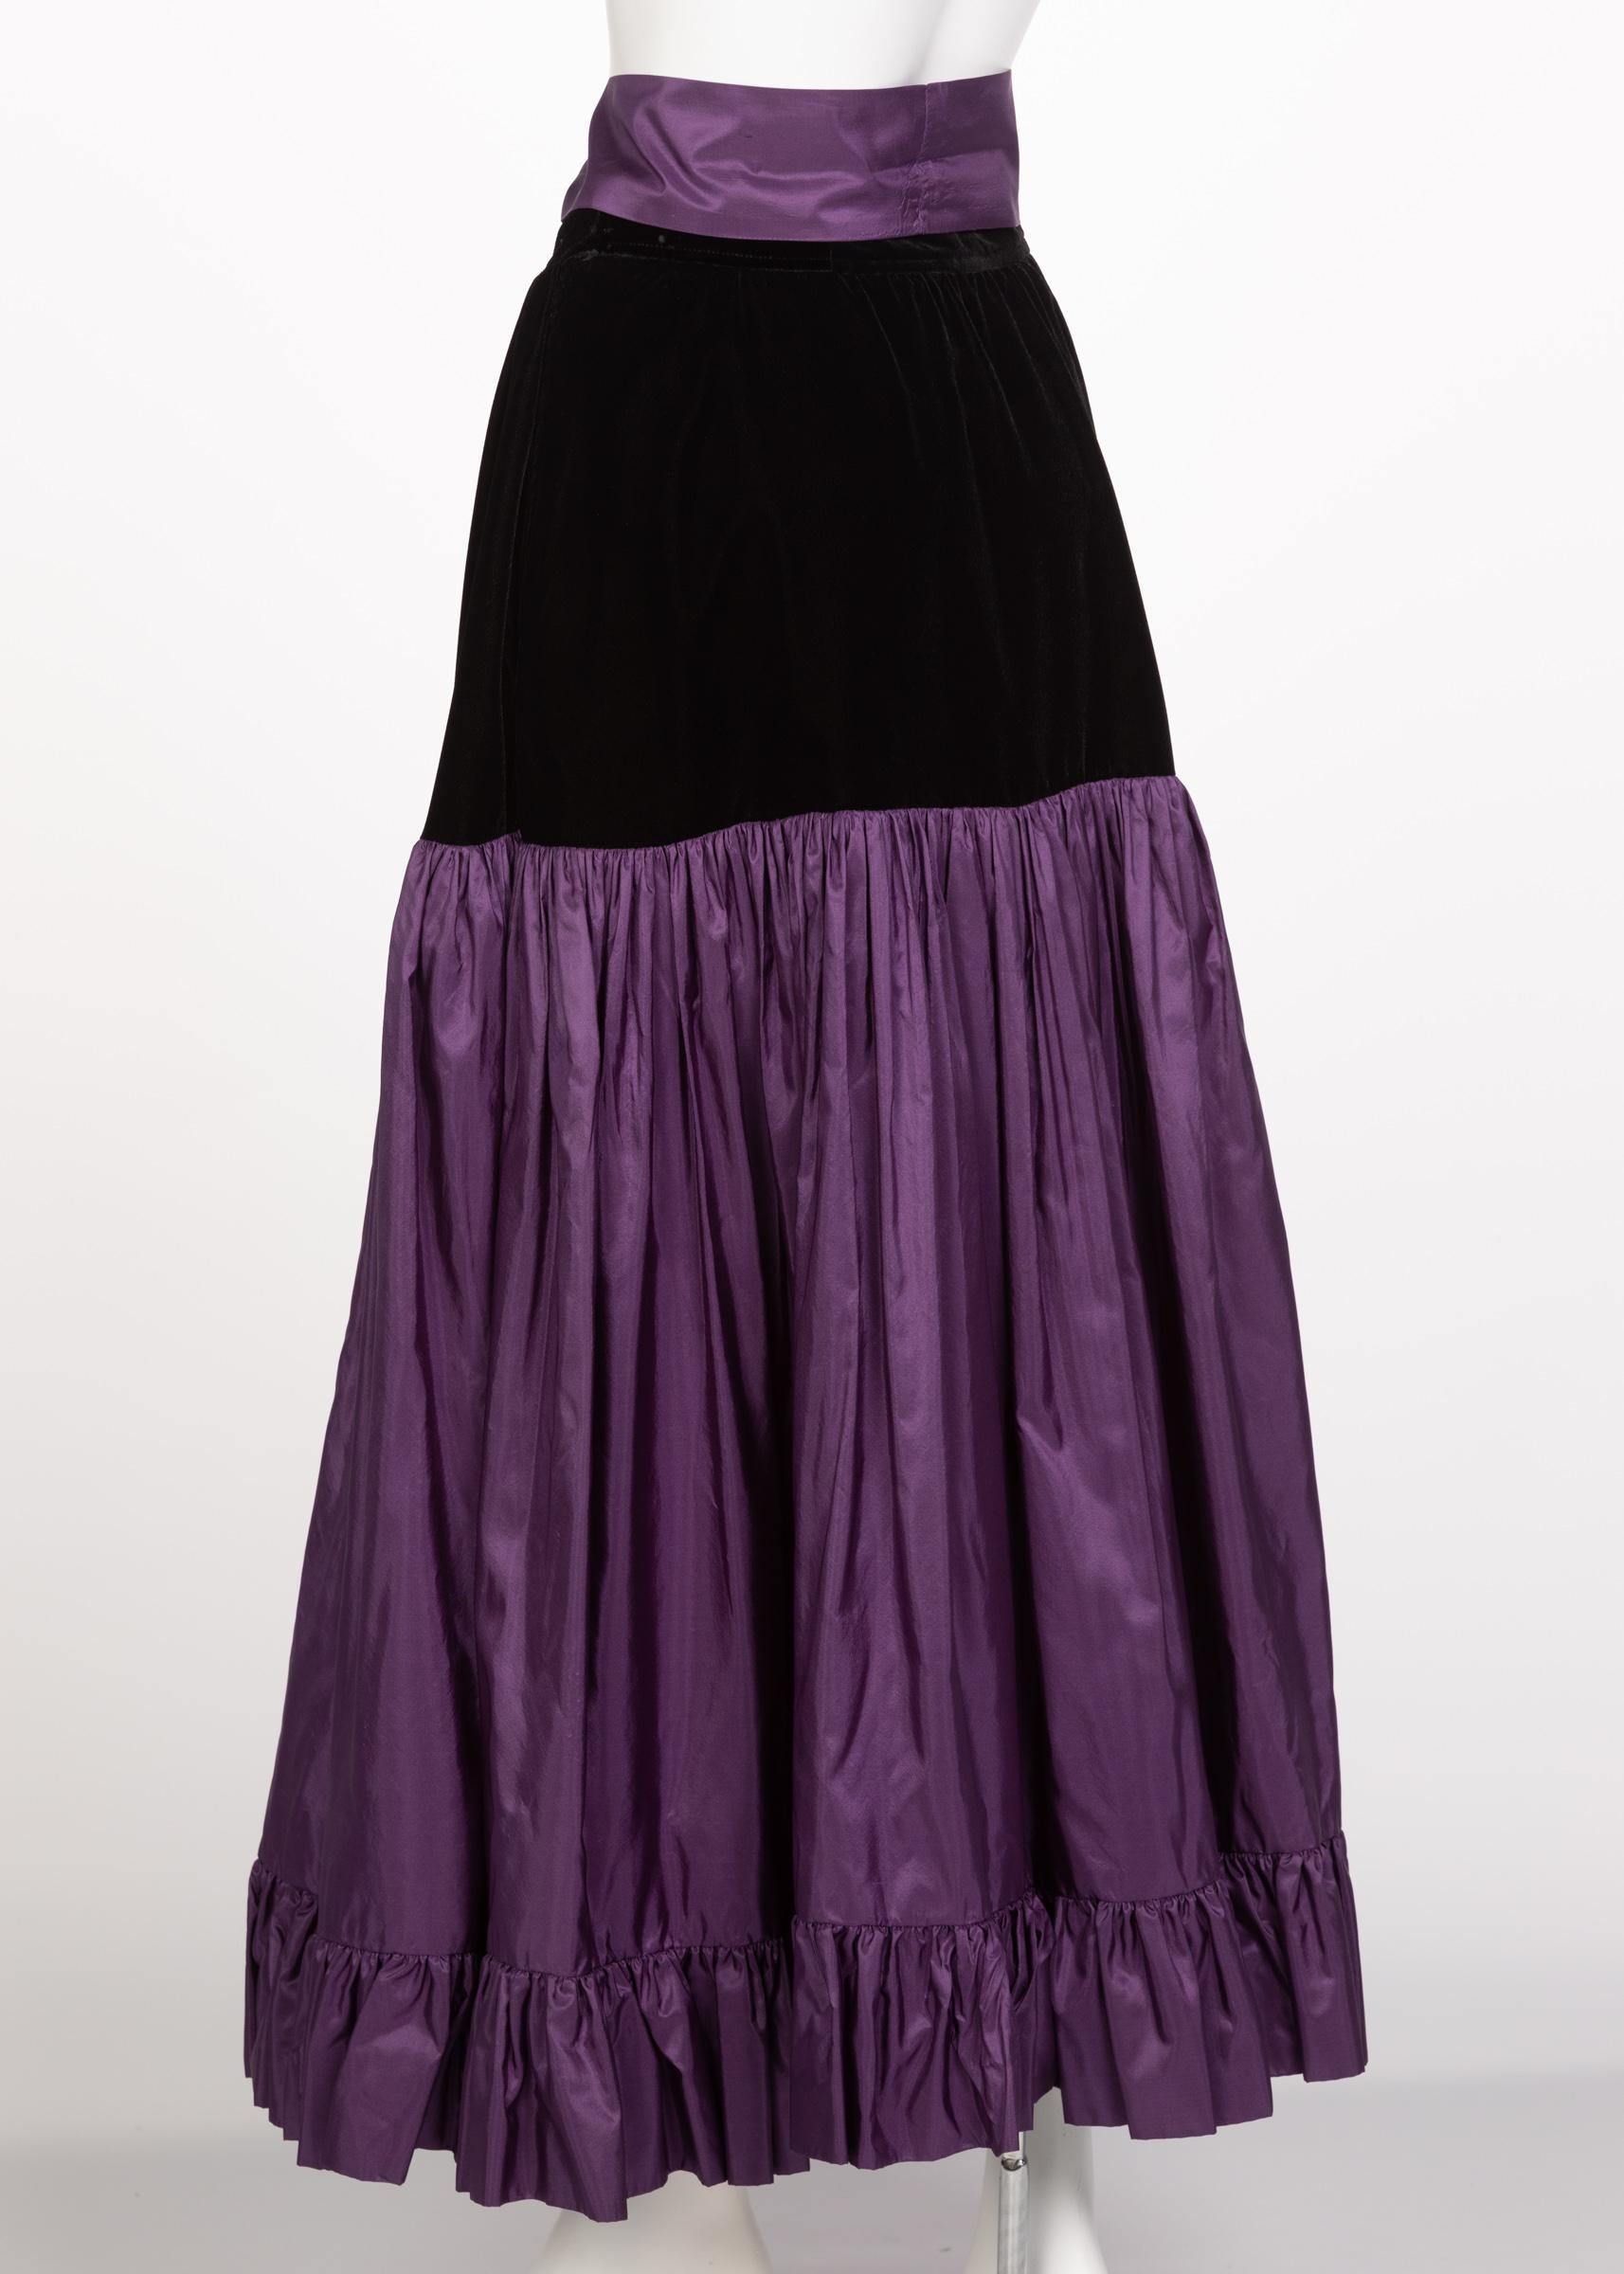 Women's or Men's Yves Saint Laurent Skirt Russian Collection Purple Skirt YSL, 1970s For Sale